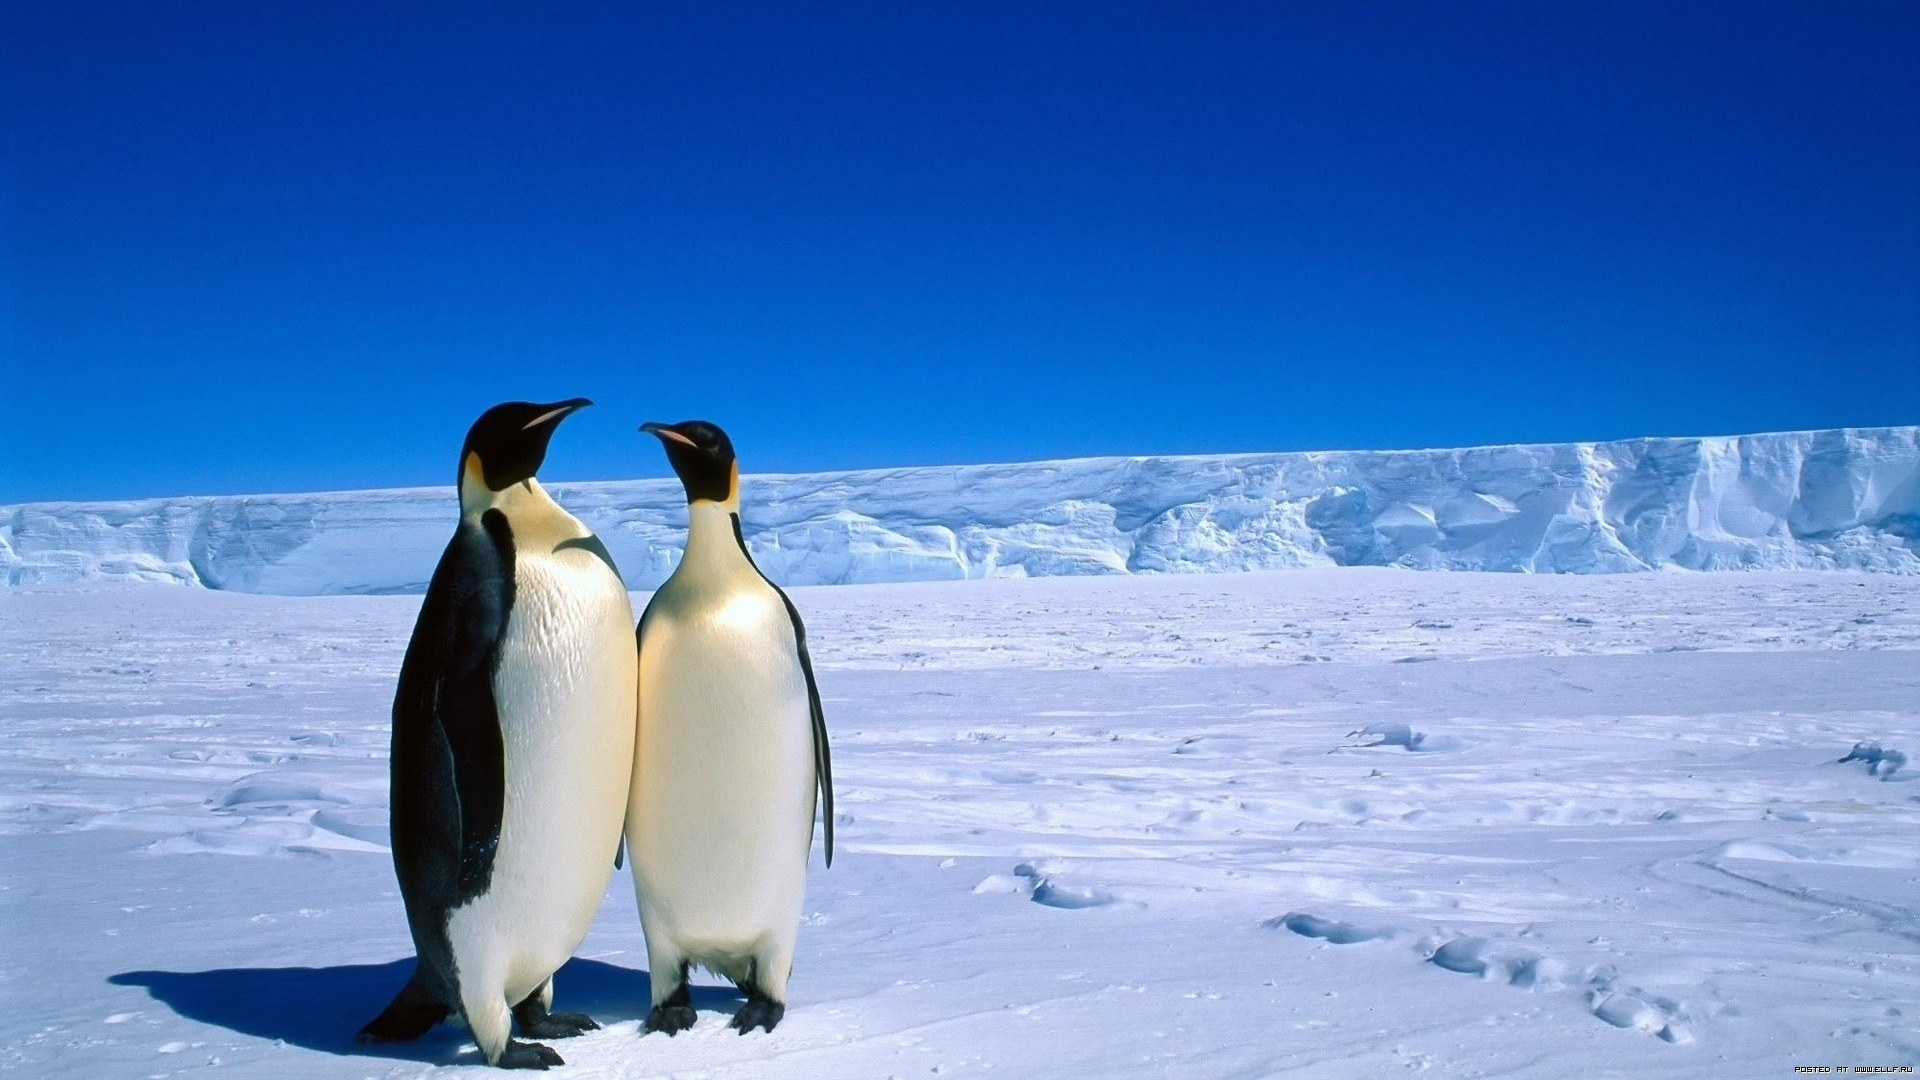 Скачать обои бесплатно Животные, Пейзаж, Пингвины картинка на рабочий стол ПК